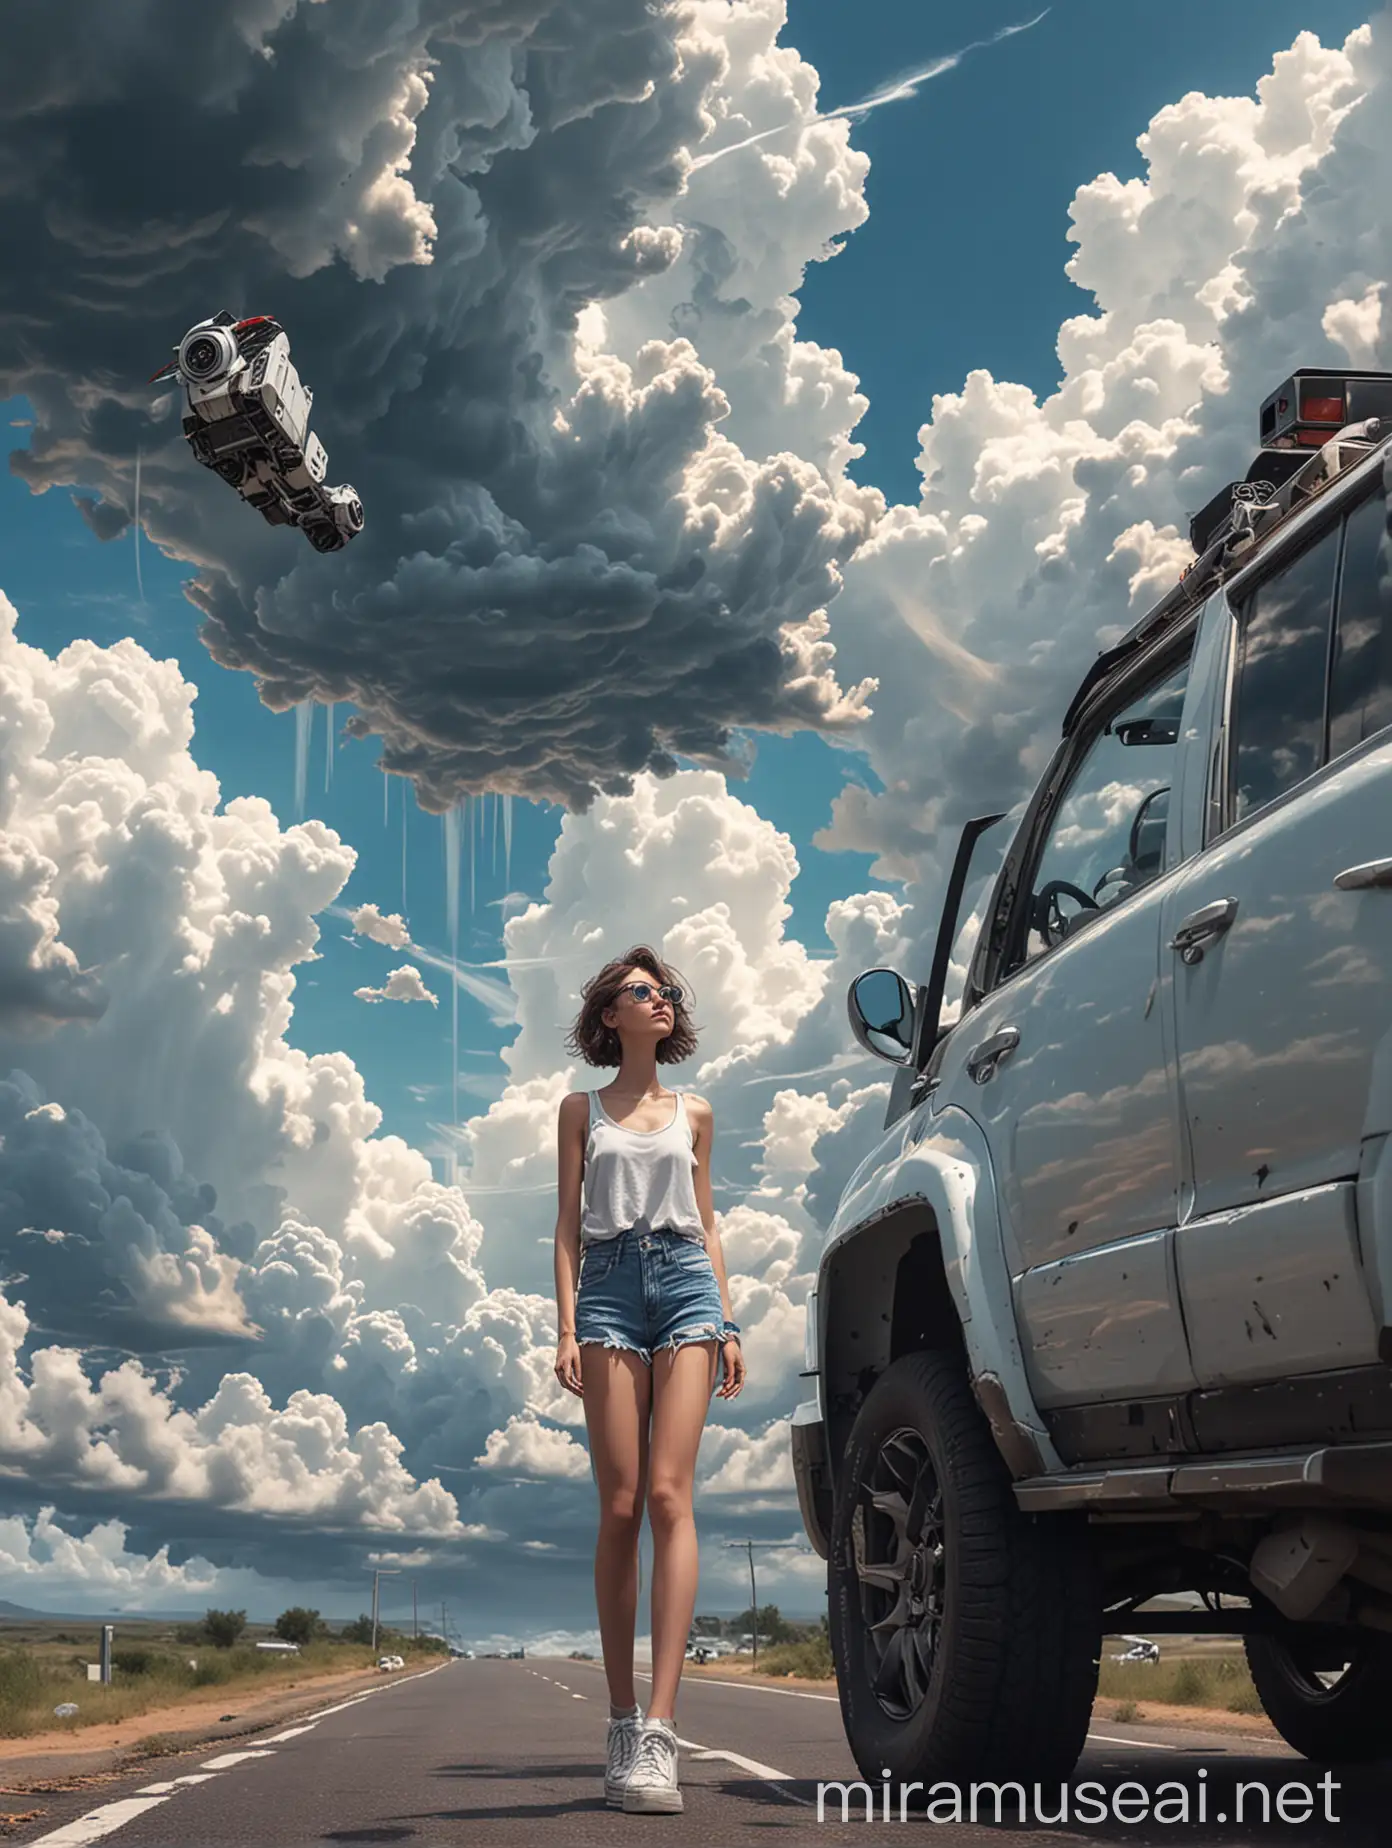 汽车停在在天空中的道路上，一个女孩衣着时尚，短裤，机器人弯着身子为这个酷酷的女孩打开车门，下面是耸入云霄的建筑